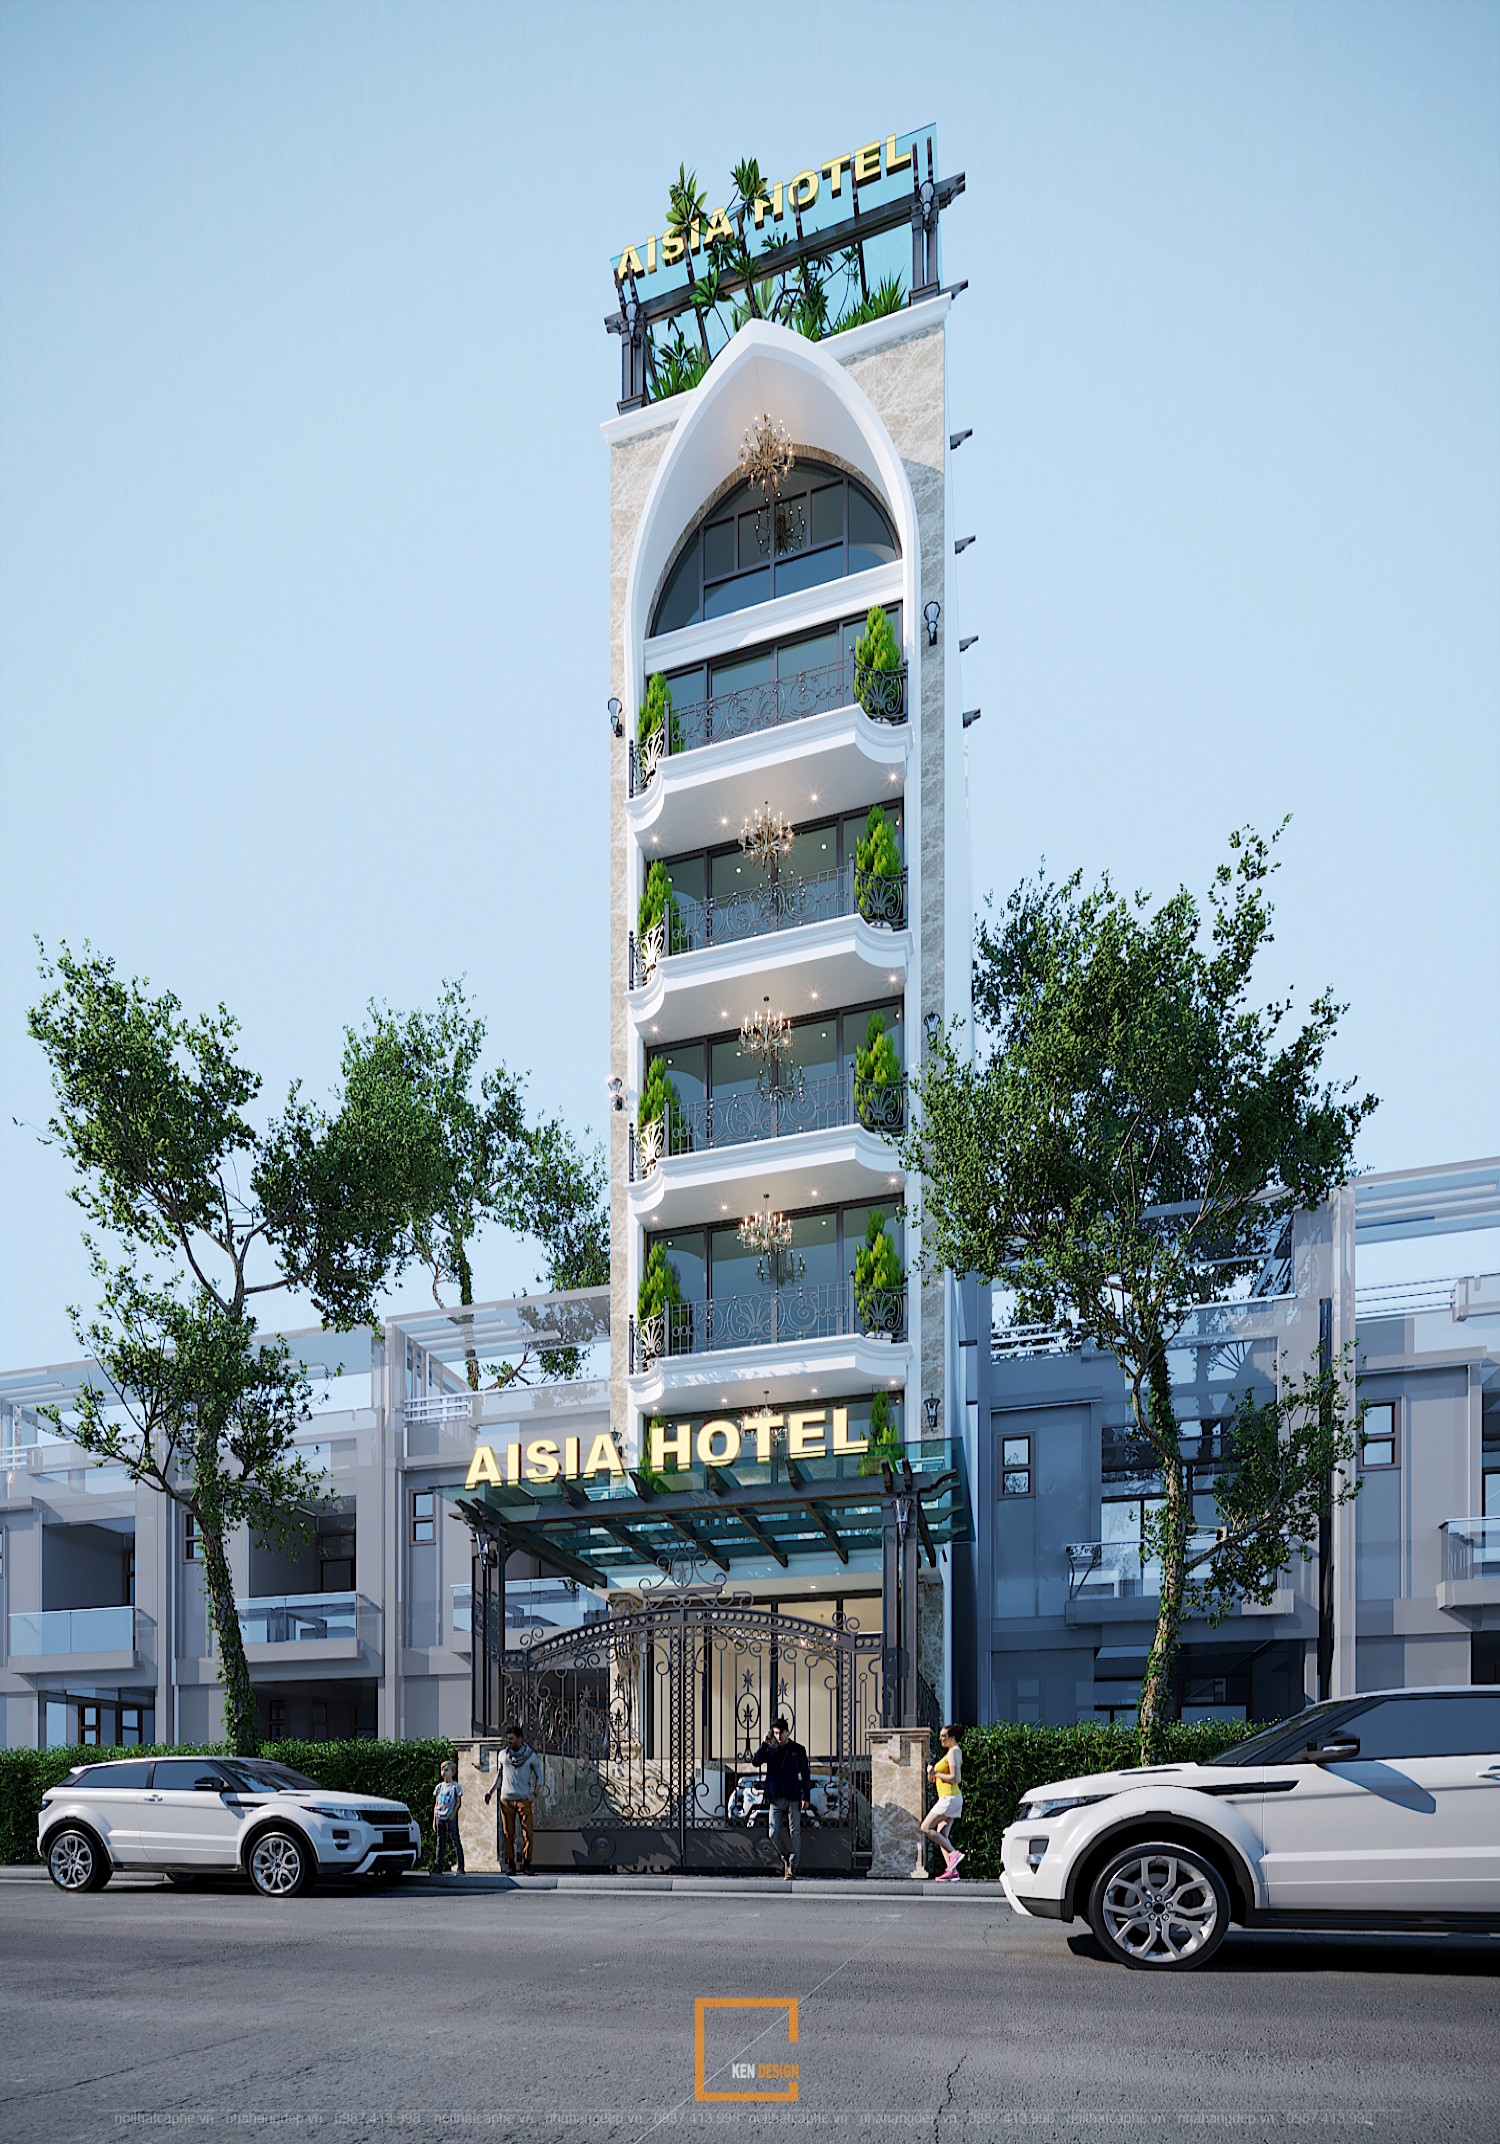 thiết kế sảnh khách sạn aisia hotel